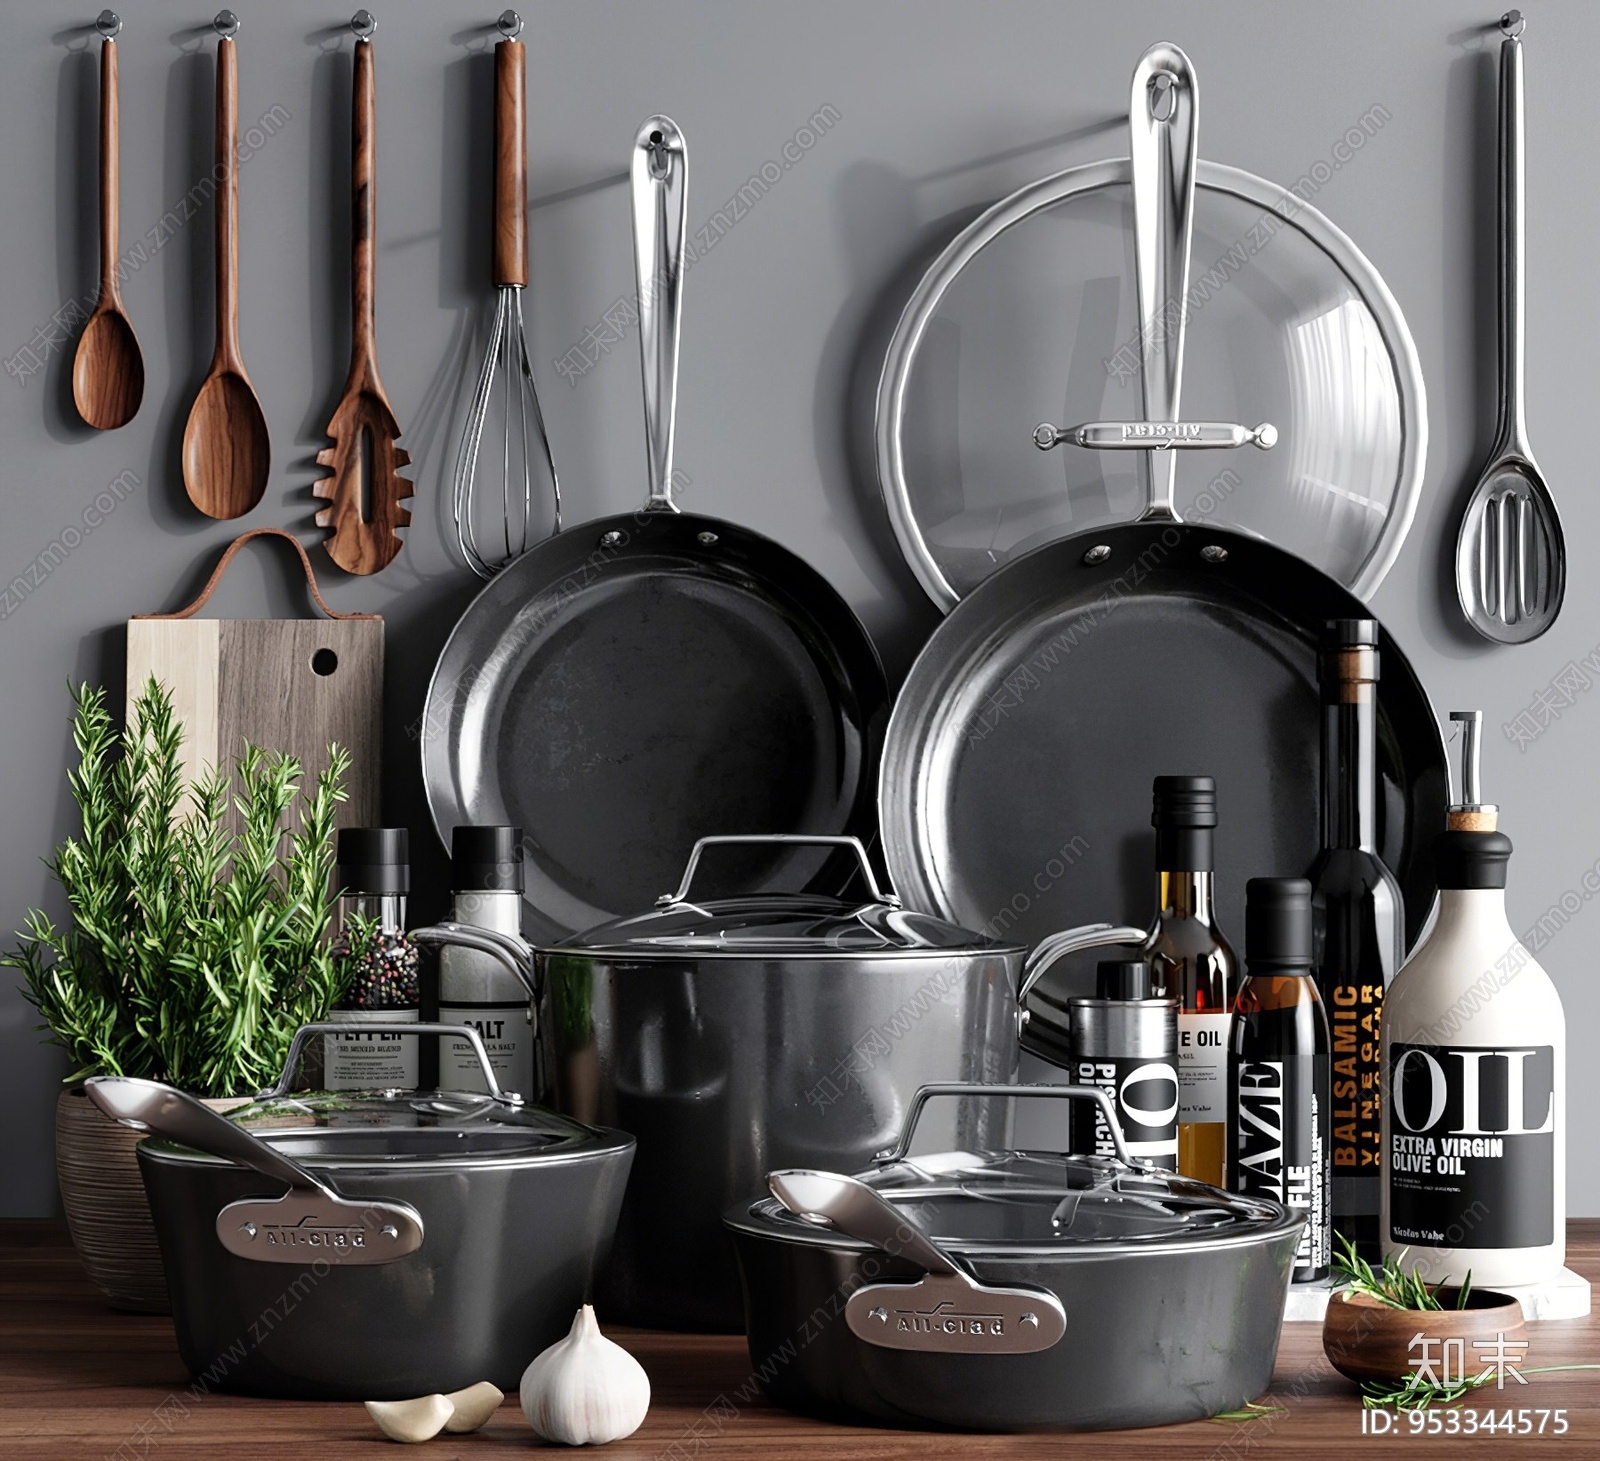 Dish type. Посуда аксессуары для кухни. Черная посуда. Посуда для темной кухни. Kitchen посуда черный стильный.